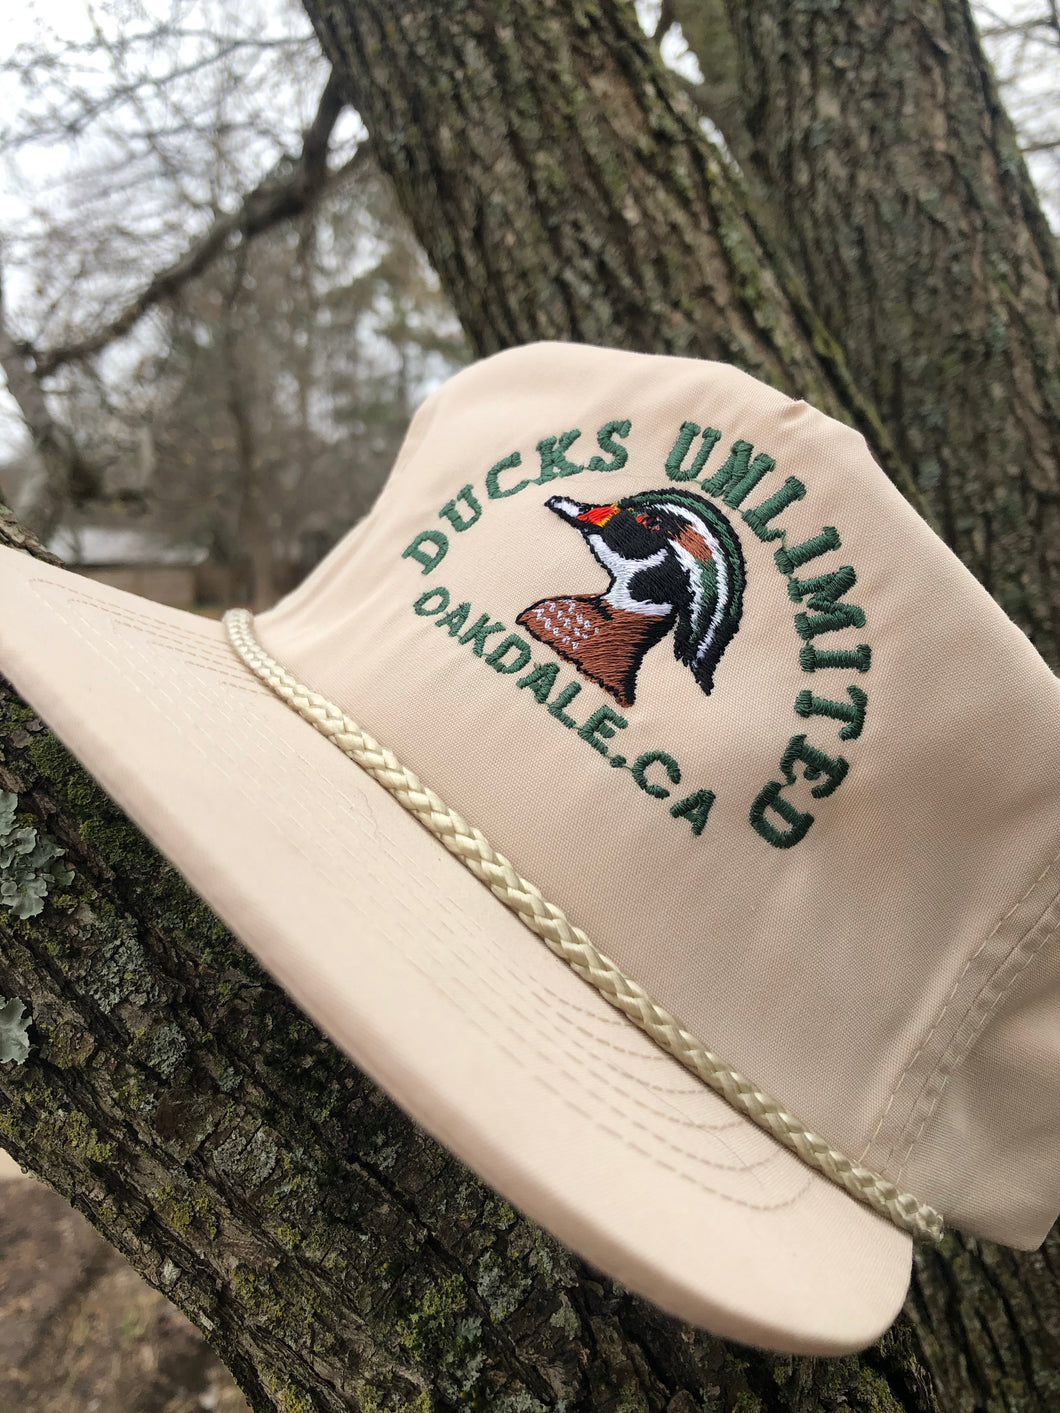 Oakdale California Ducks Unlimited Hat